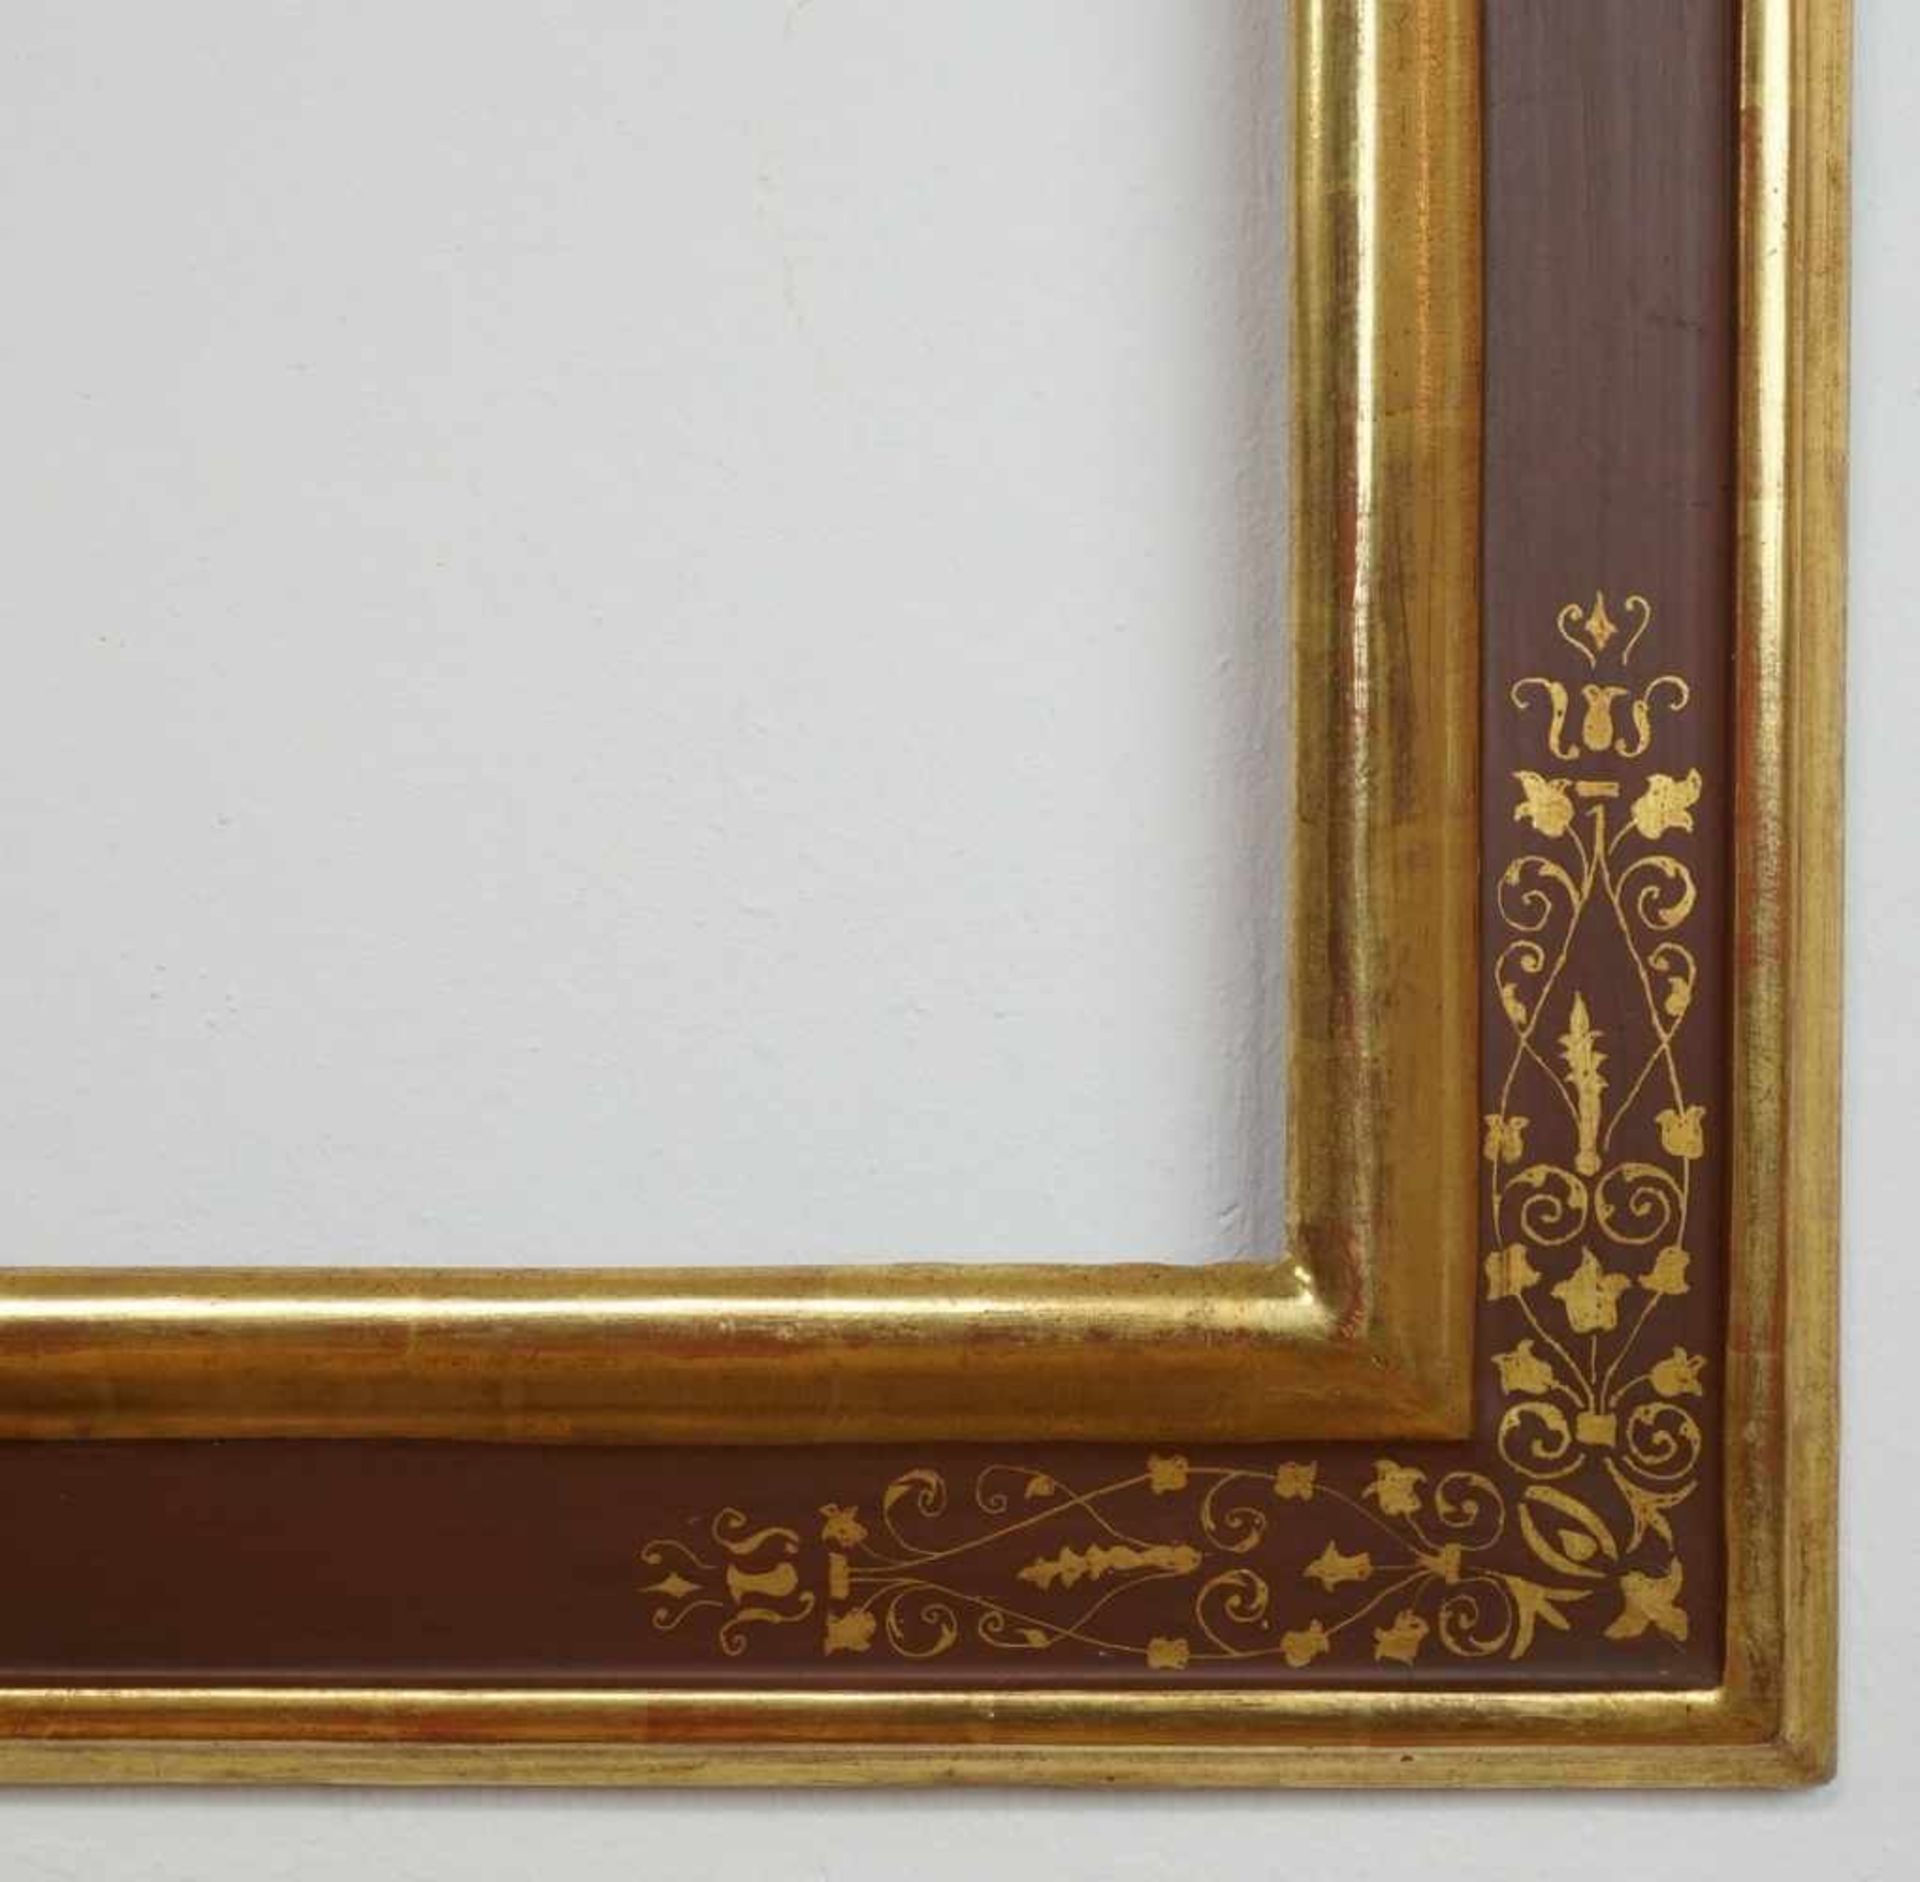 Drei Prunkrahmenaltersgemäß guter Zustand, dunkler Altgoldrahmen, Innenmaß 58 x 47 cm, - Bild 4 aus 4